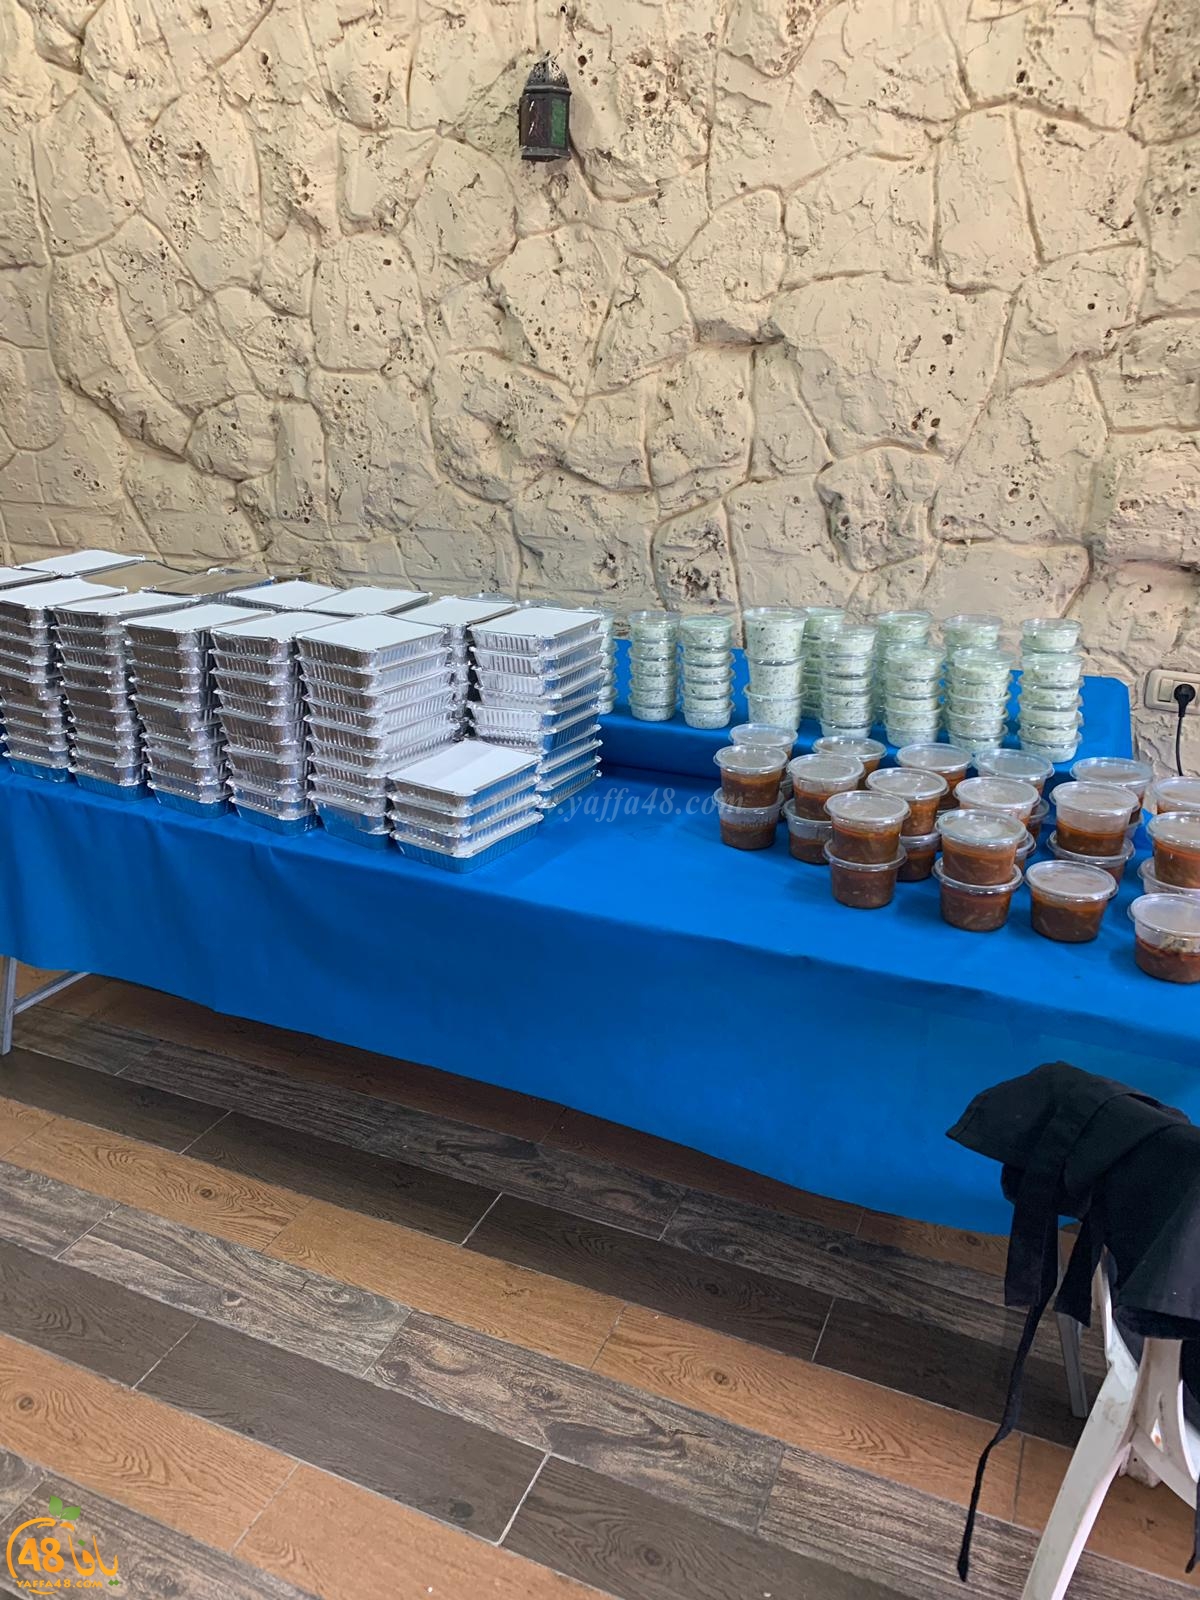  اللد: توزيع 300 وجبة افطار يومياً في رمضان ضمن مشروع عمار يا بلد